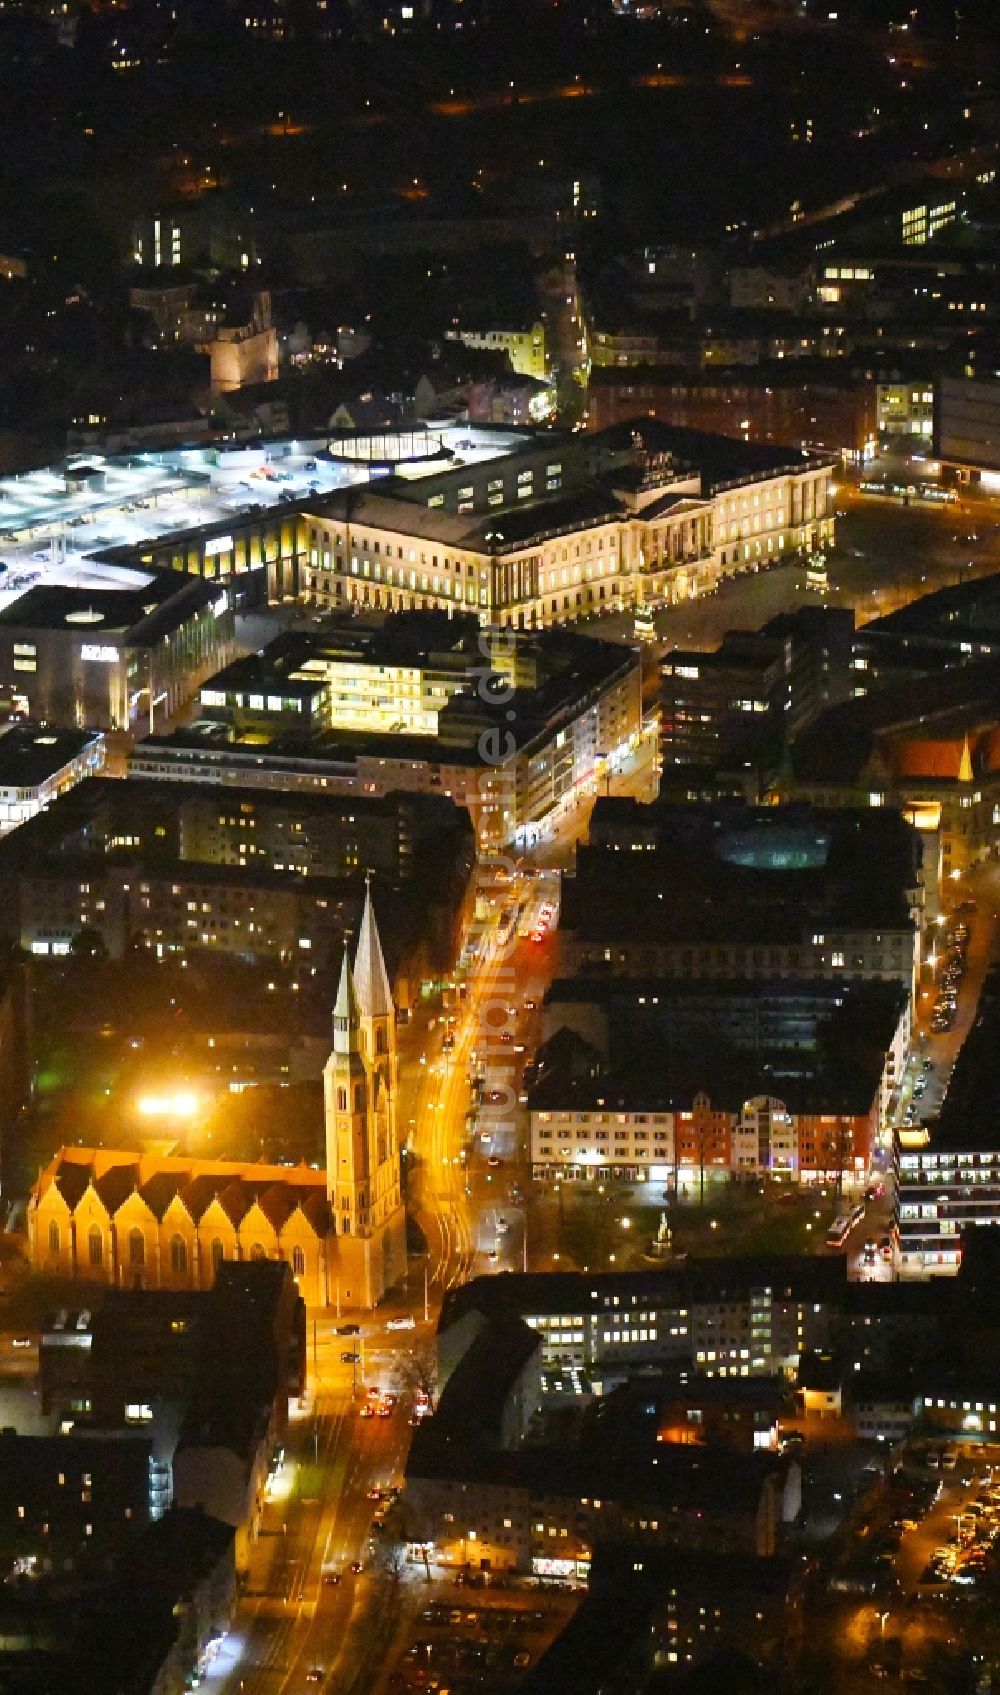 Nacht-Luftaufnahme Braunschweig - Nachtluftbild des Stadtzentrum im Innenstadtbereich in Braunschweig im Bundesland Niedersachsen, Deutschland